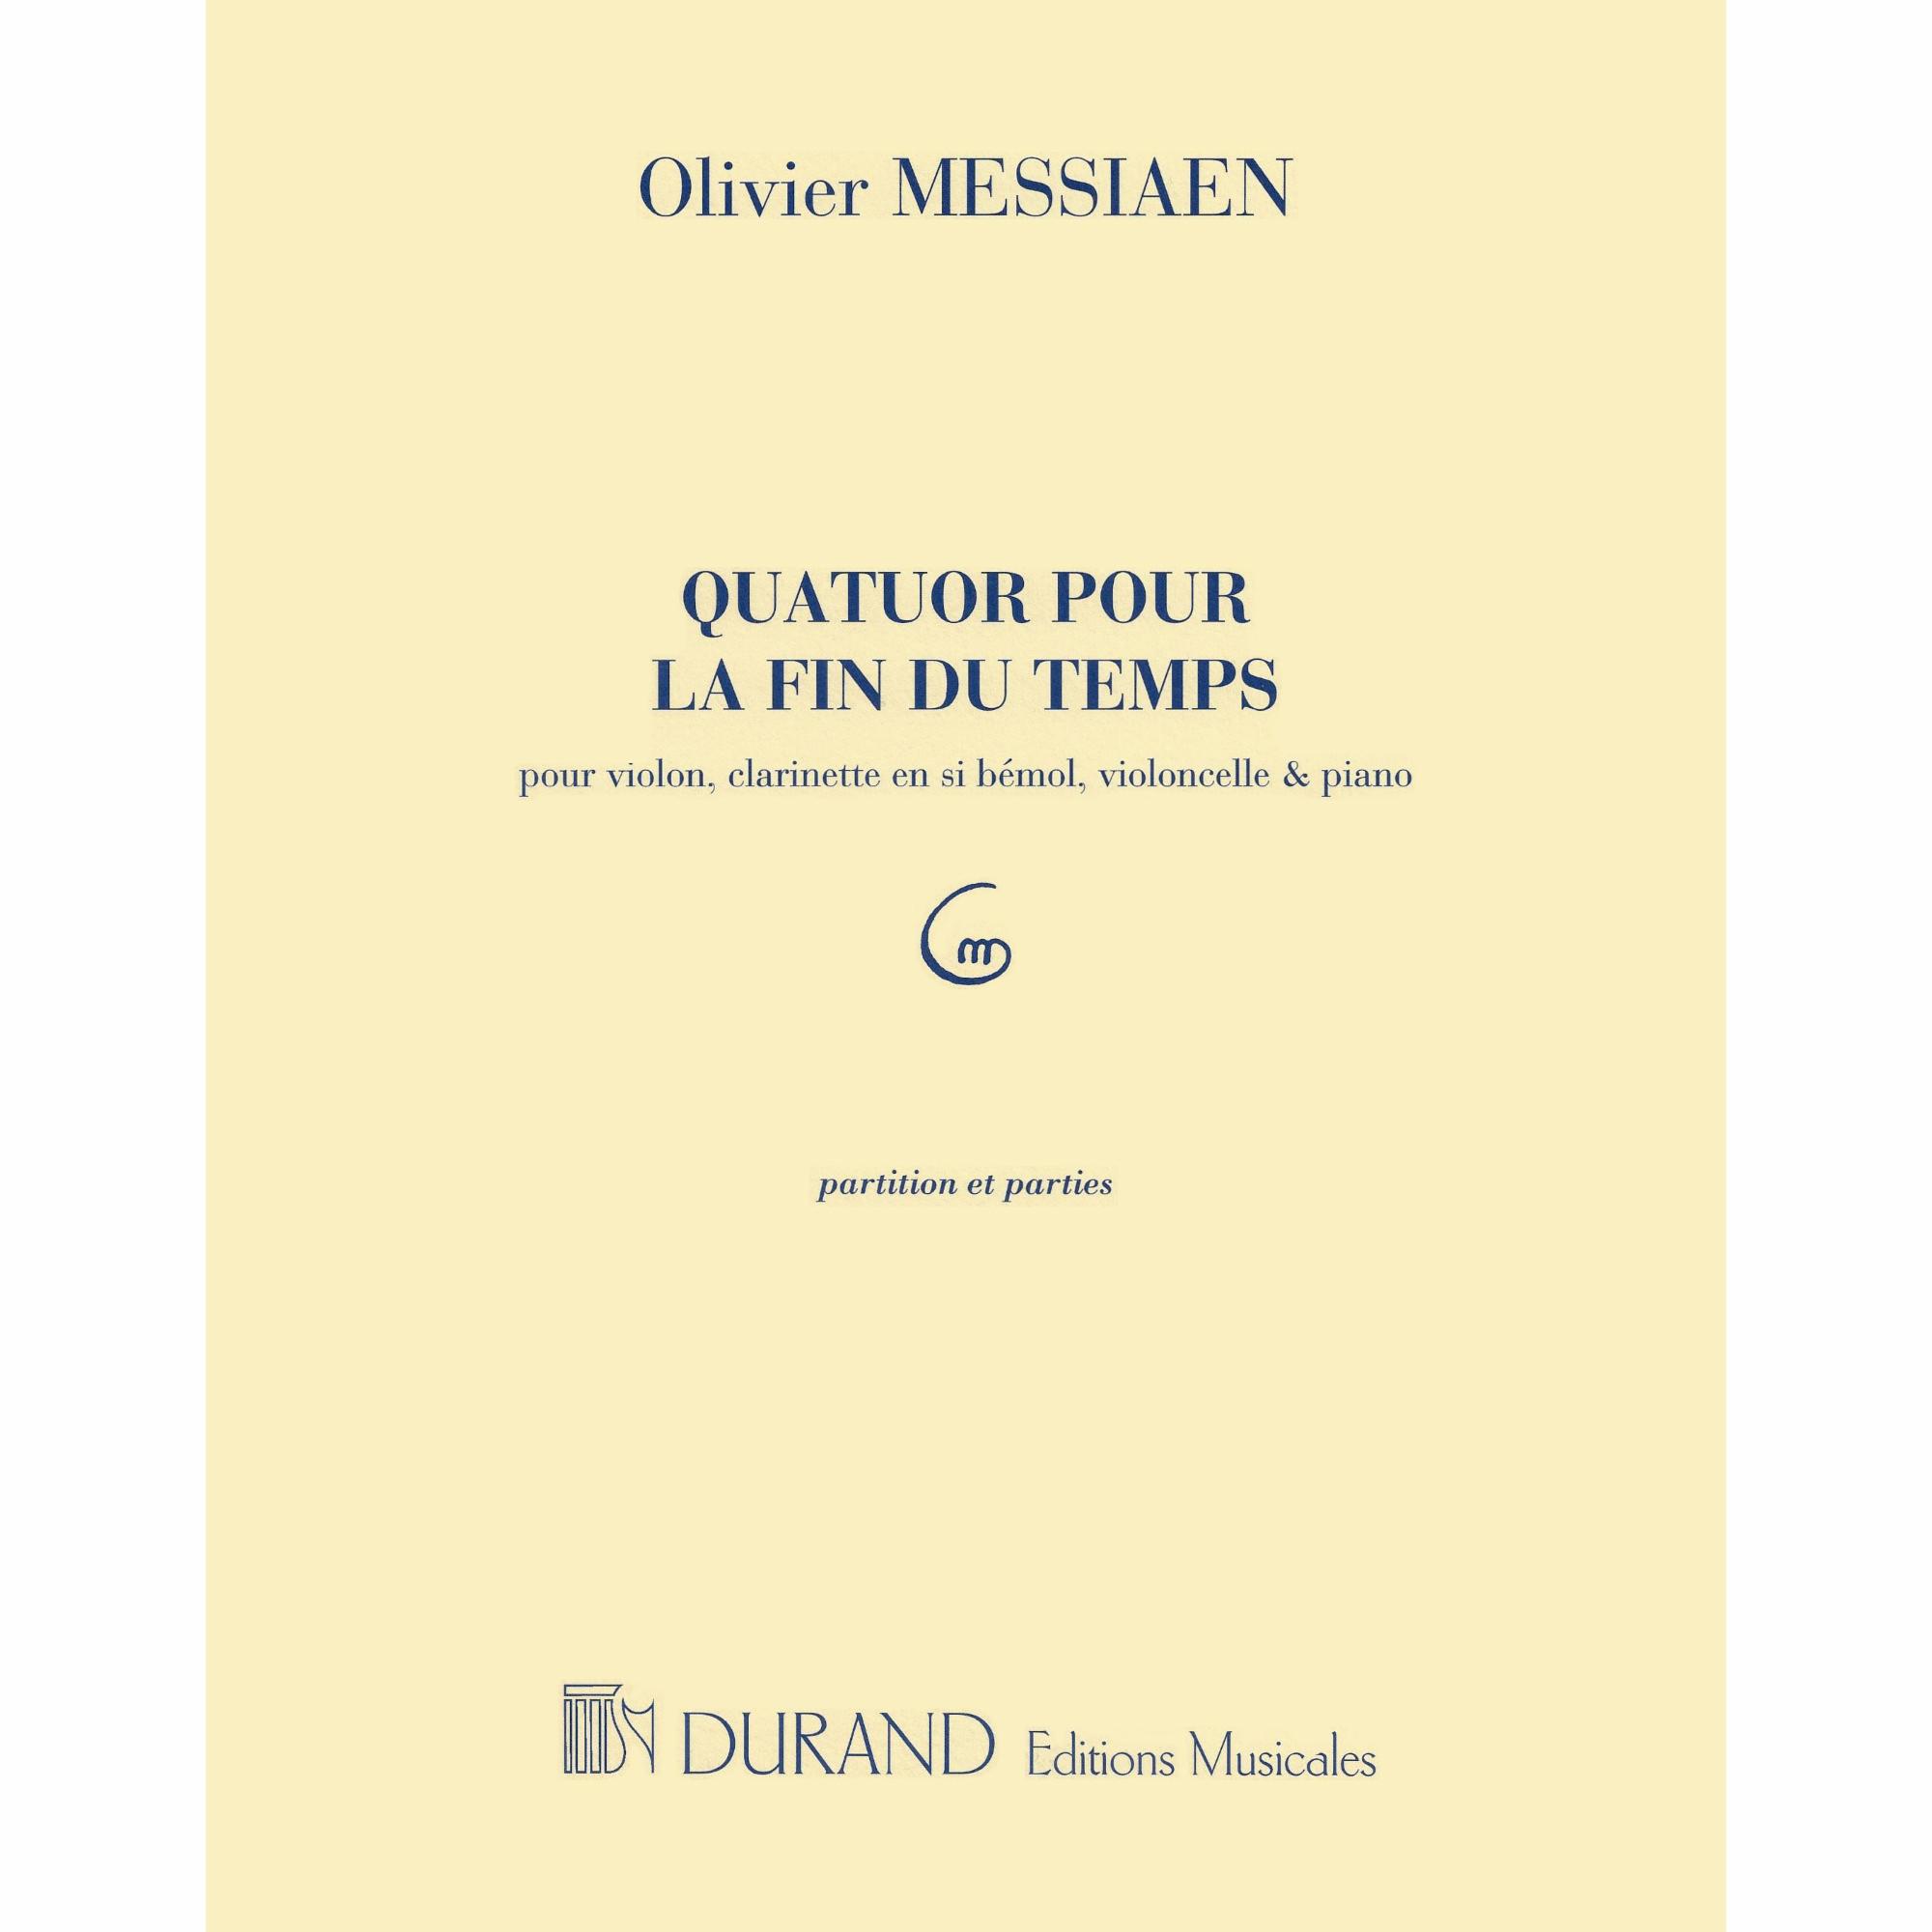 Messiaen -- Quatour pour la fin du temps for Violin, Clarinet, Cello, and Piano